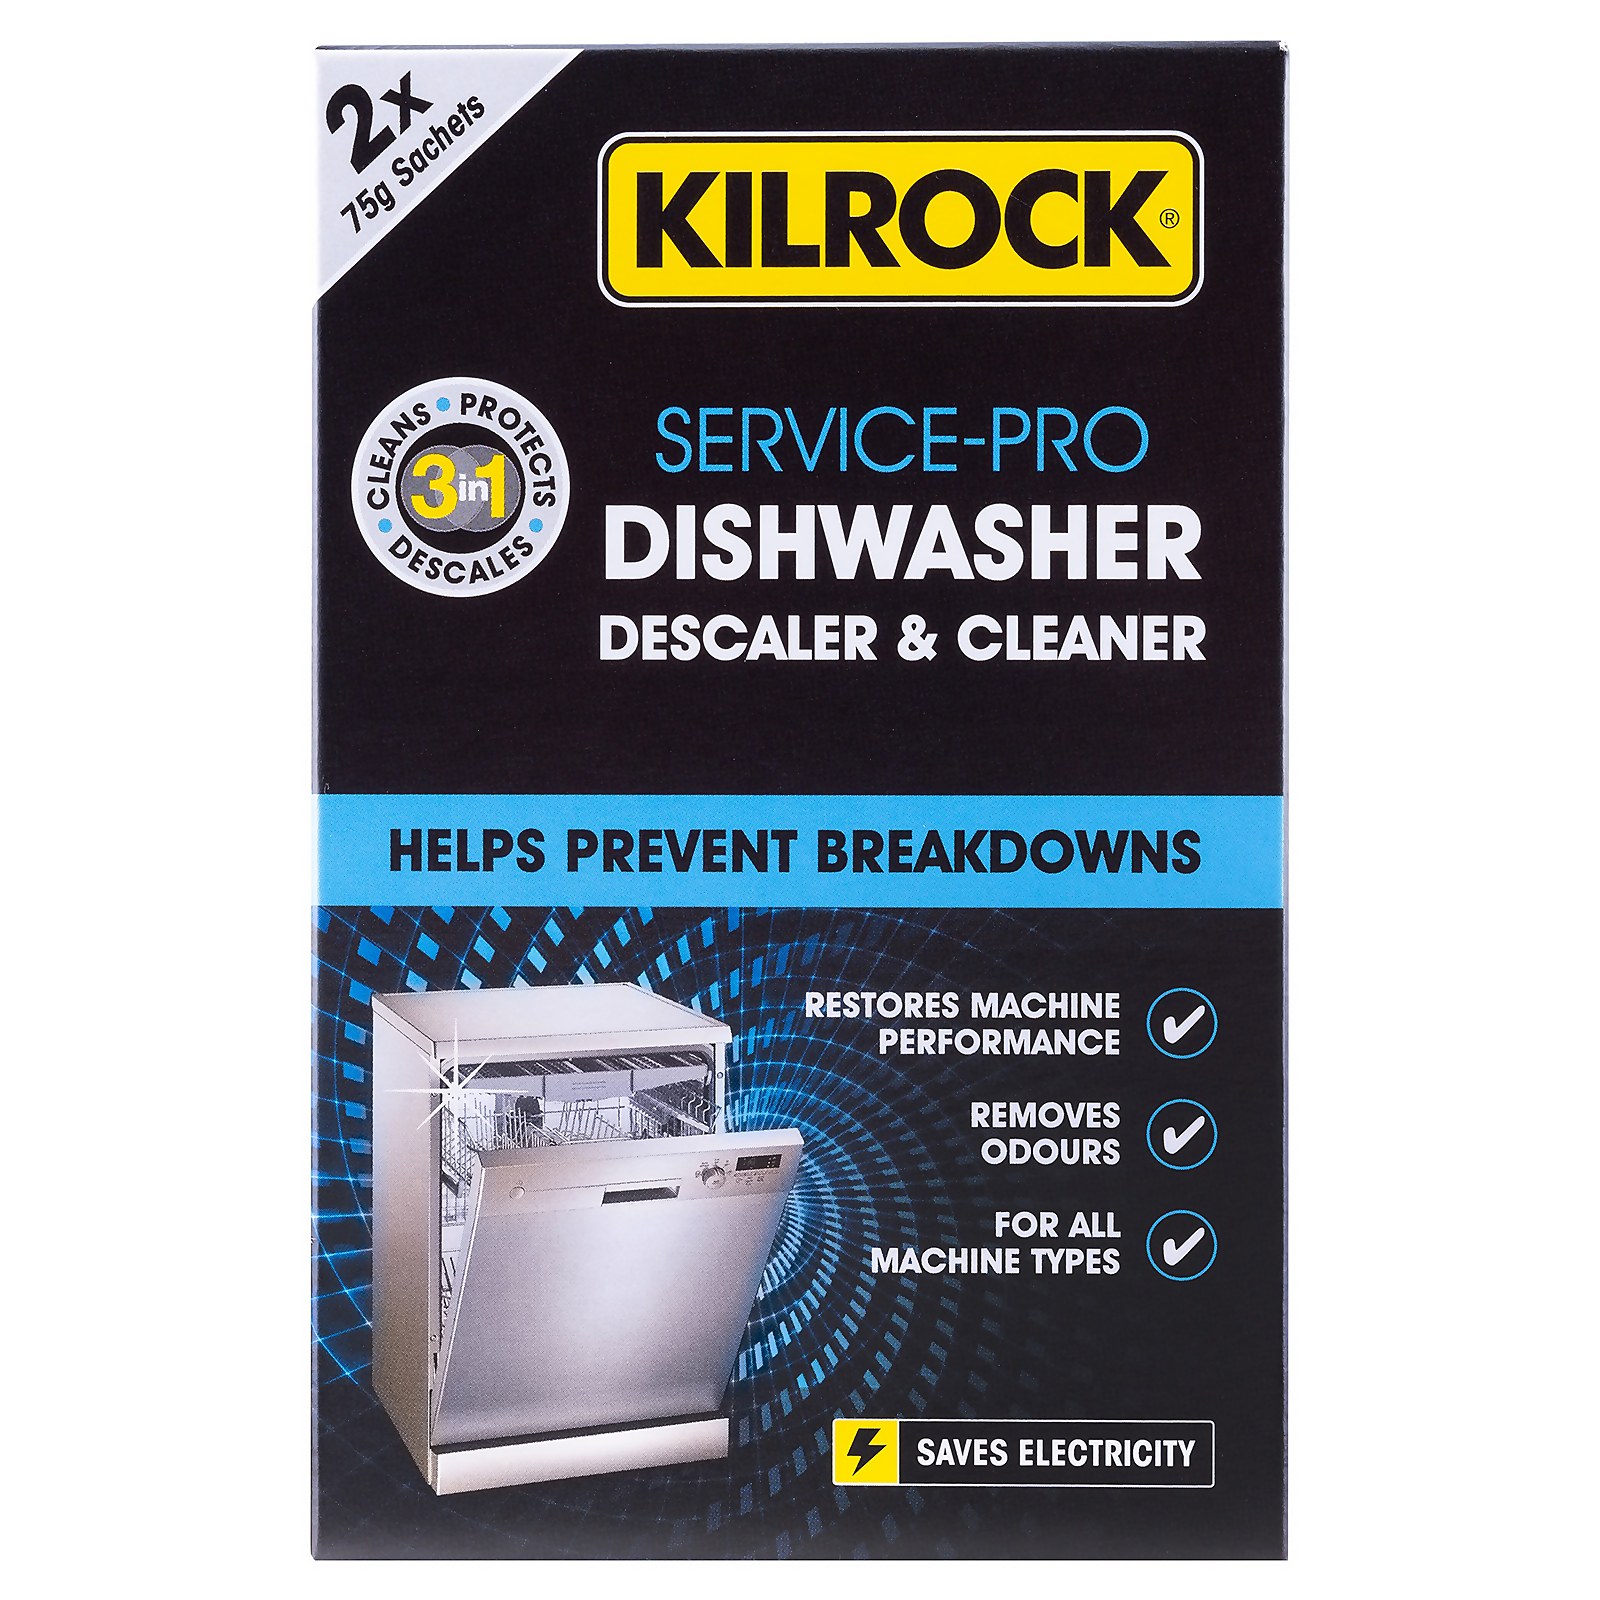 Kilrock Service-Pro Dishwasher Descaler & Cleaner - 2x75g